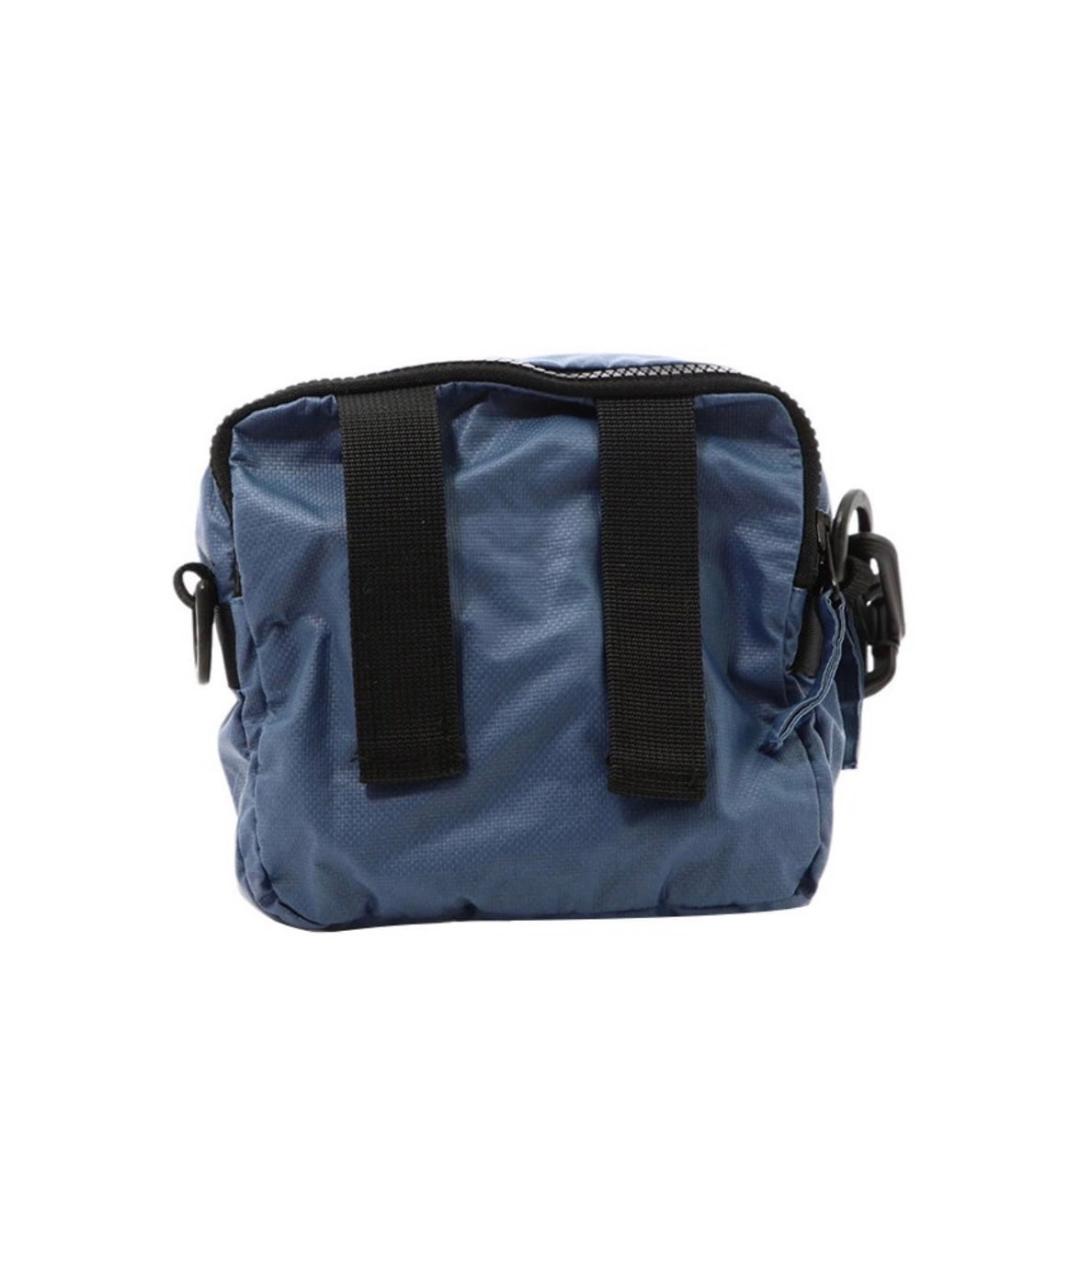 STONE ISLAND Синяя синтетическая сумка на плечо, фото 2